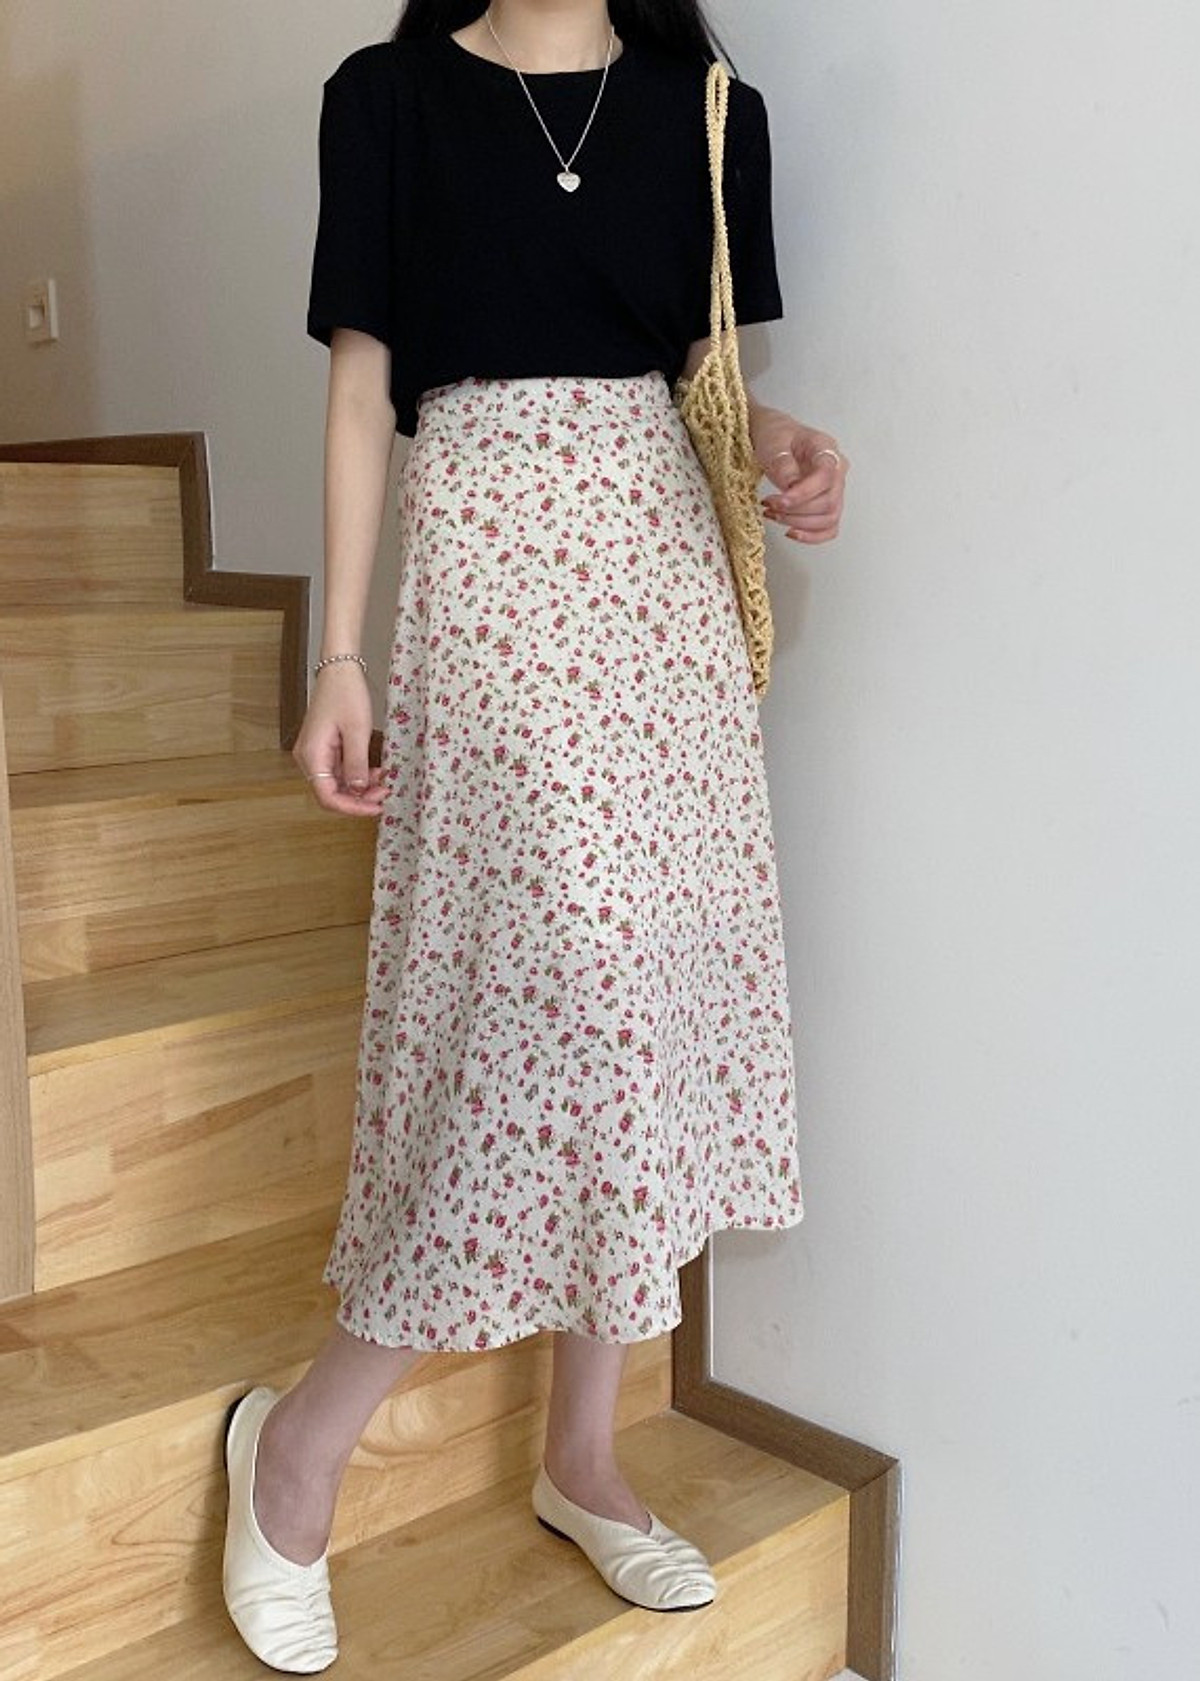 Chân váy hoa nhí 𝐕𝐈𝐍𝐓𝐀𝐆𝐄 dáng dài 2 lớp lưng chun phong cách  𝐔𝐥𝐳𝐳𝐚𝐧𝐠 Hàn Quốc -